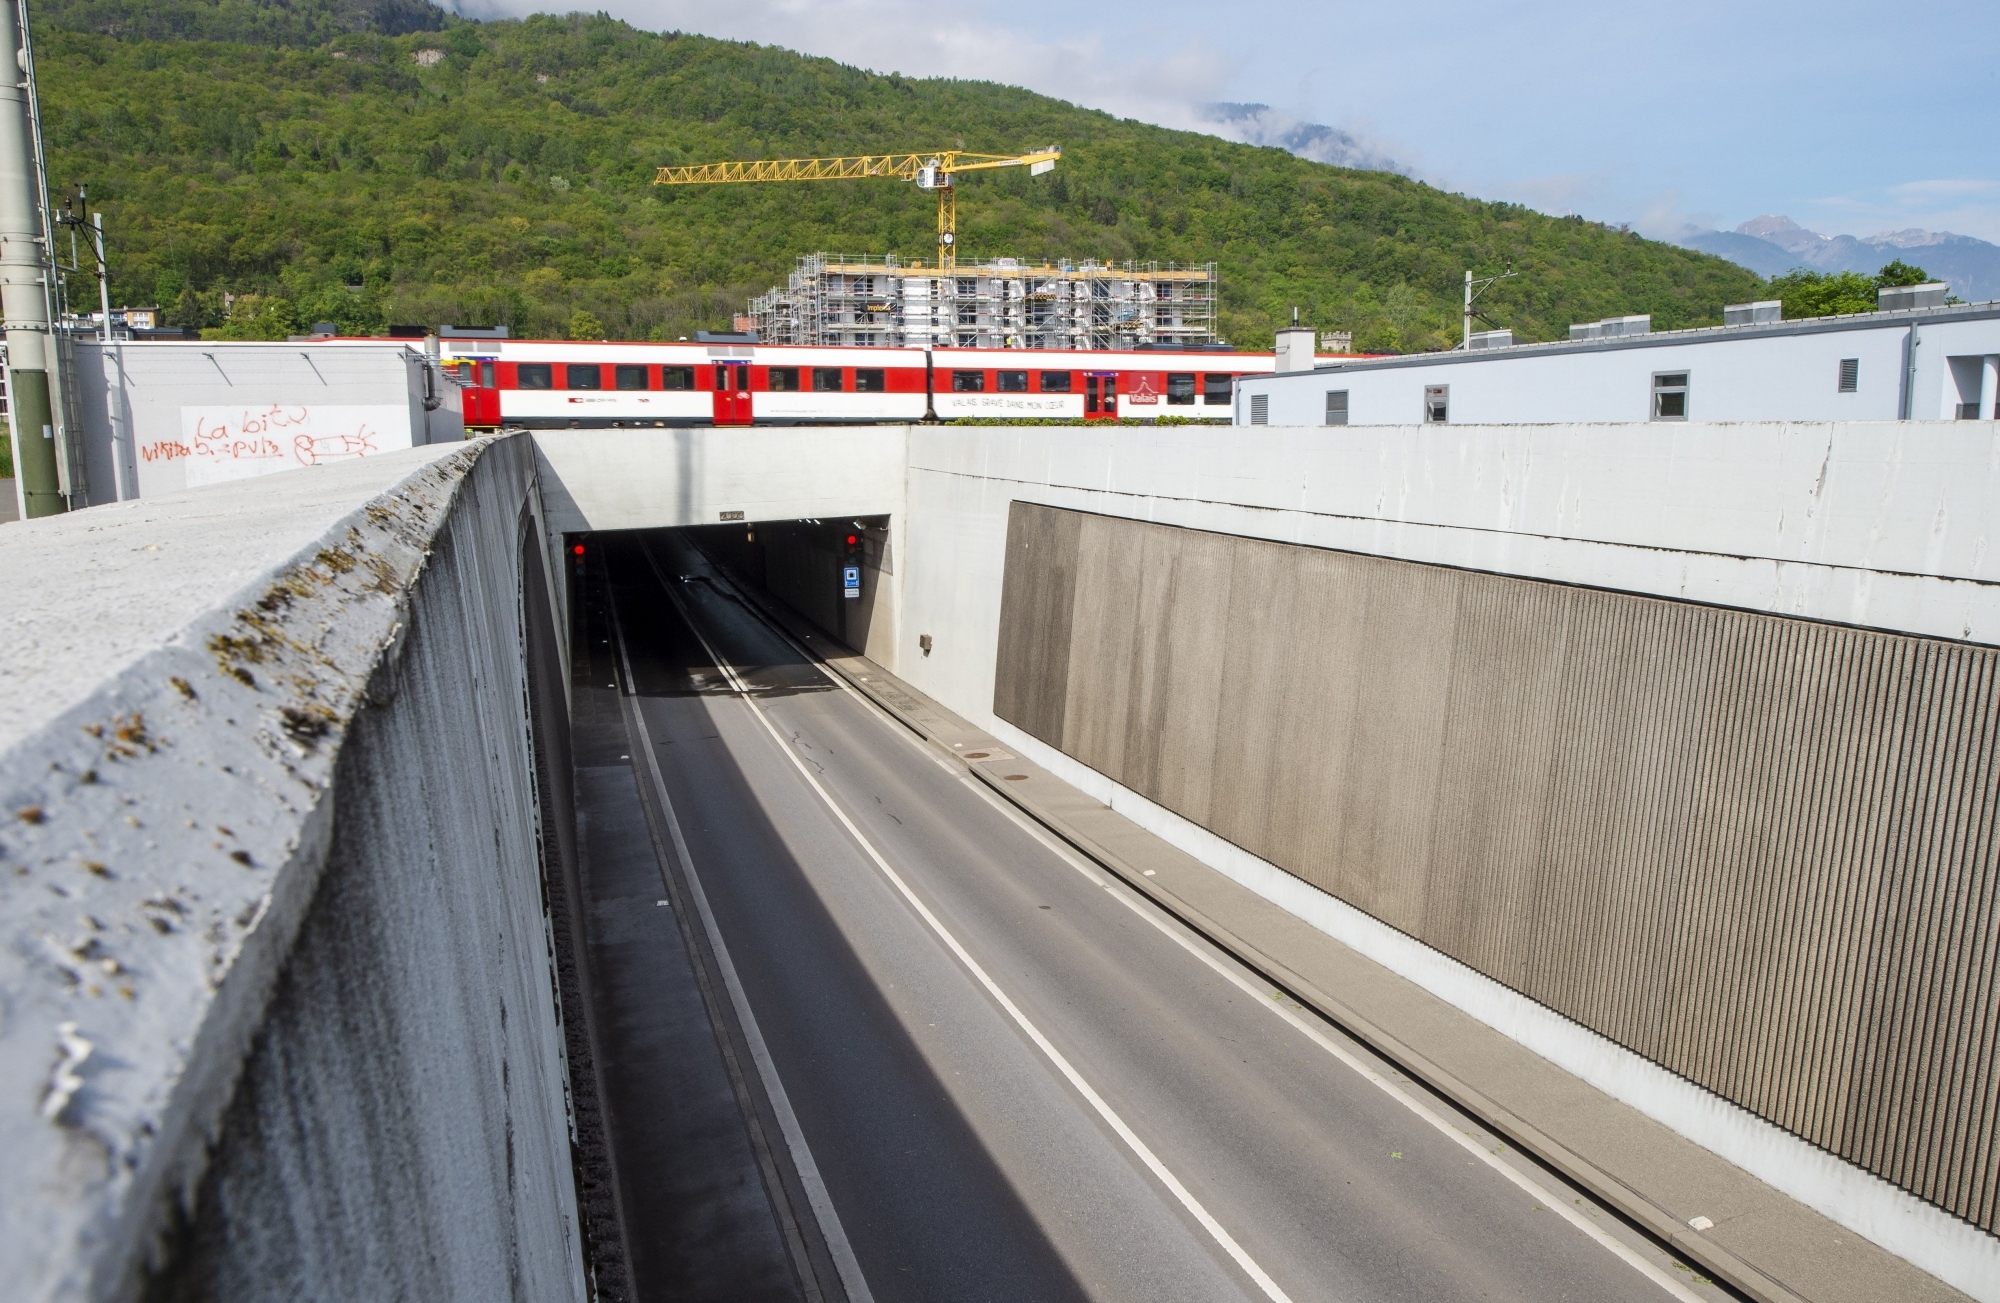 Le tunnel de la vallée sera fermé durant plusieurs heures chaque jour de la semaine prochaine.